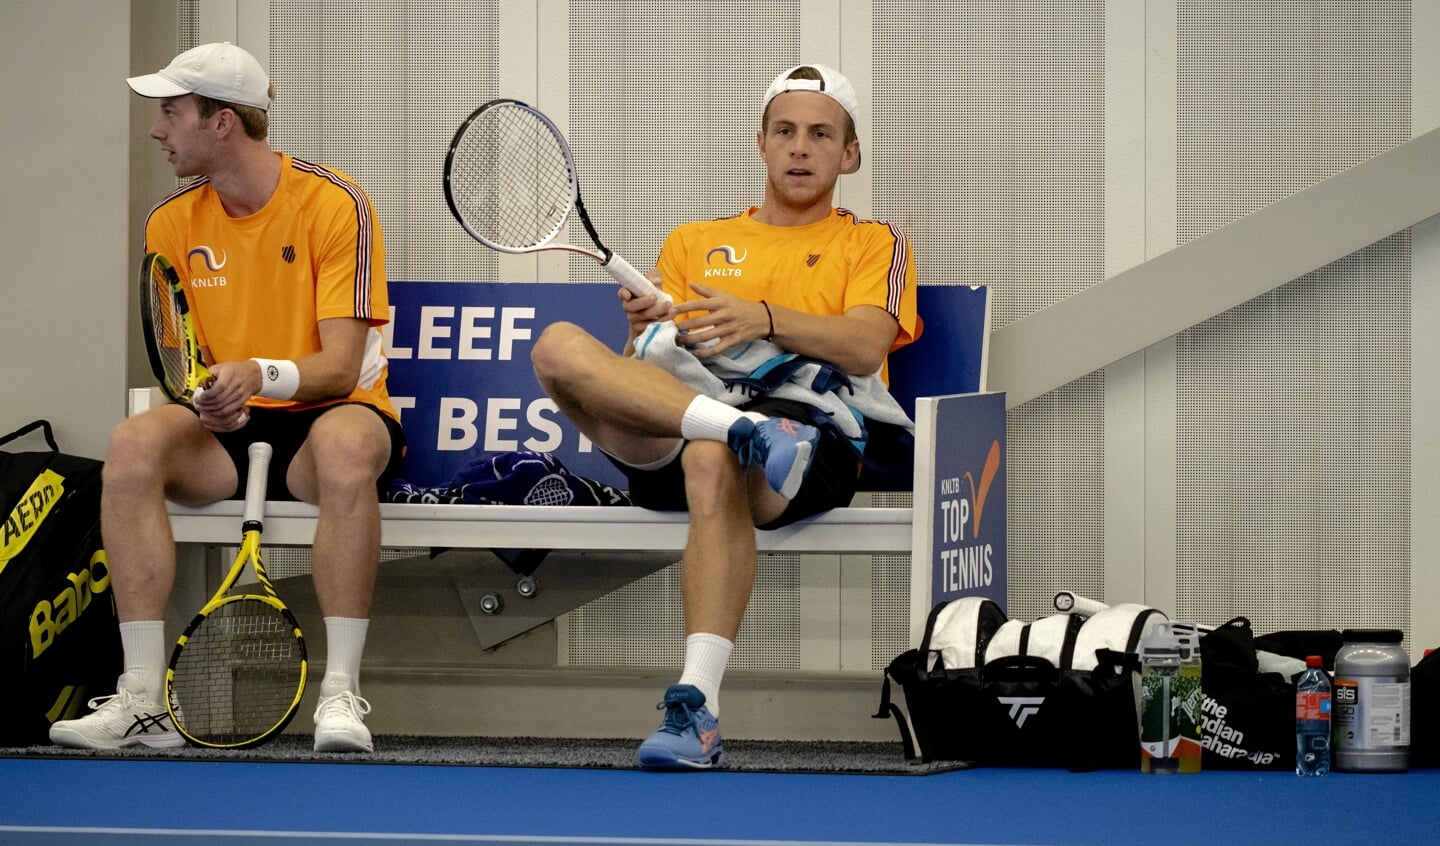 Tennissers Botic van de Zandschulp en Tallon Griekspoor bij de training voor de Daviscup Finals in Glasgow.